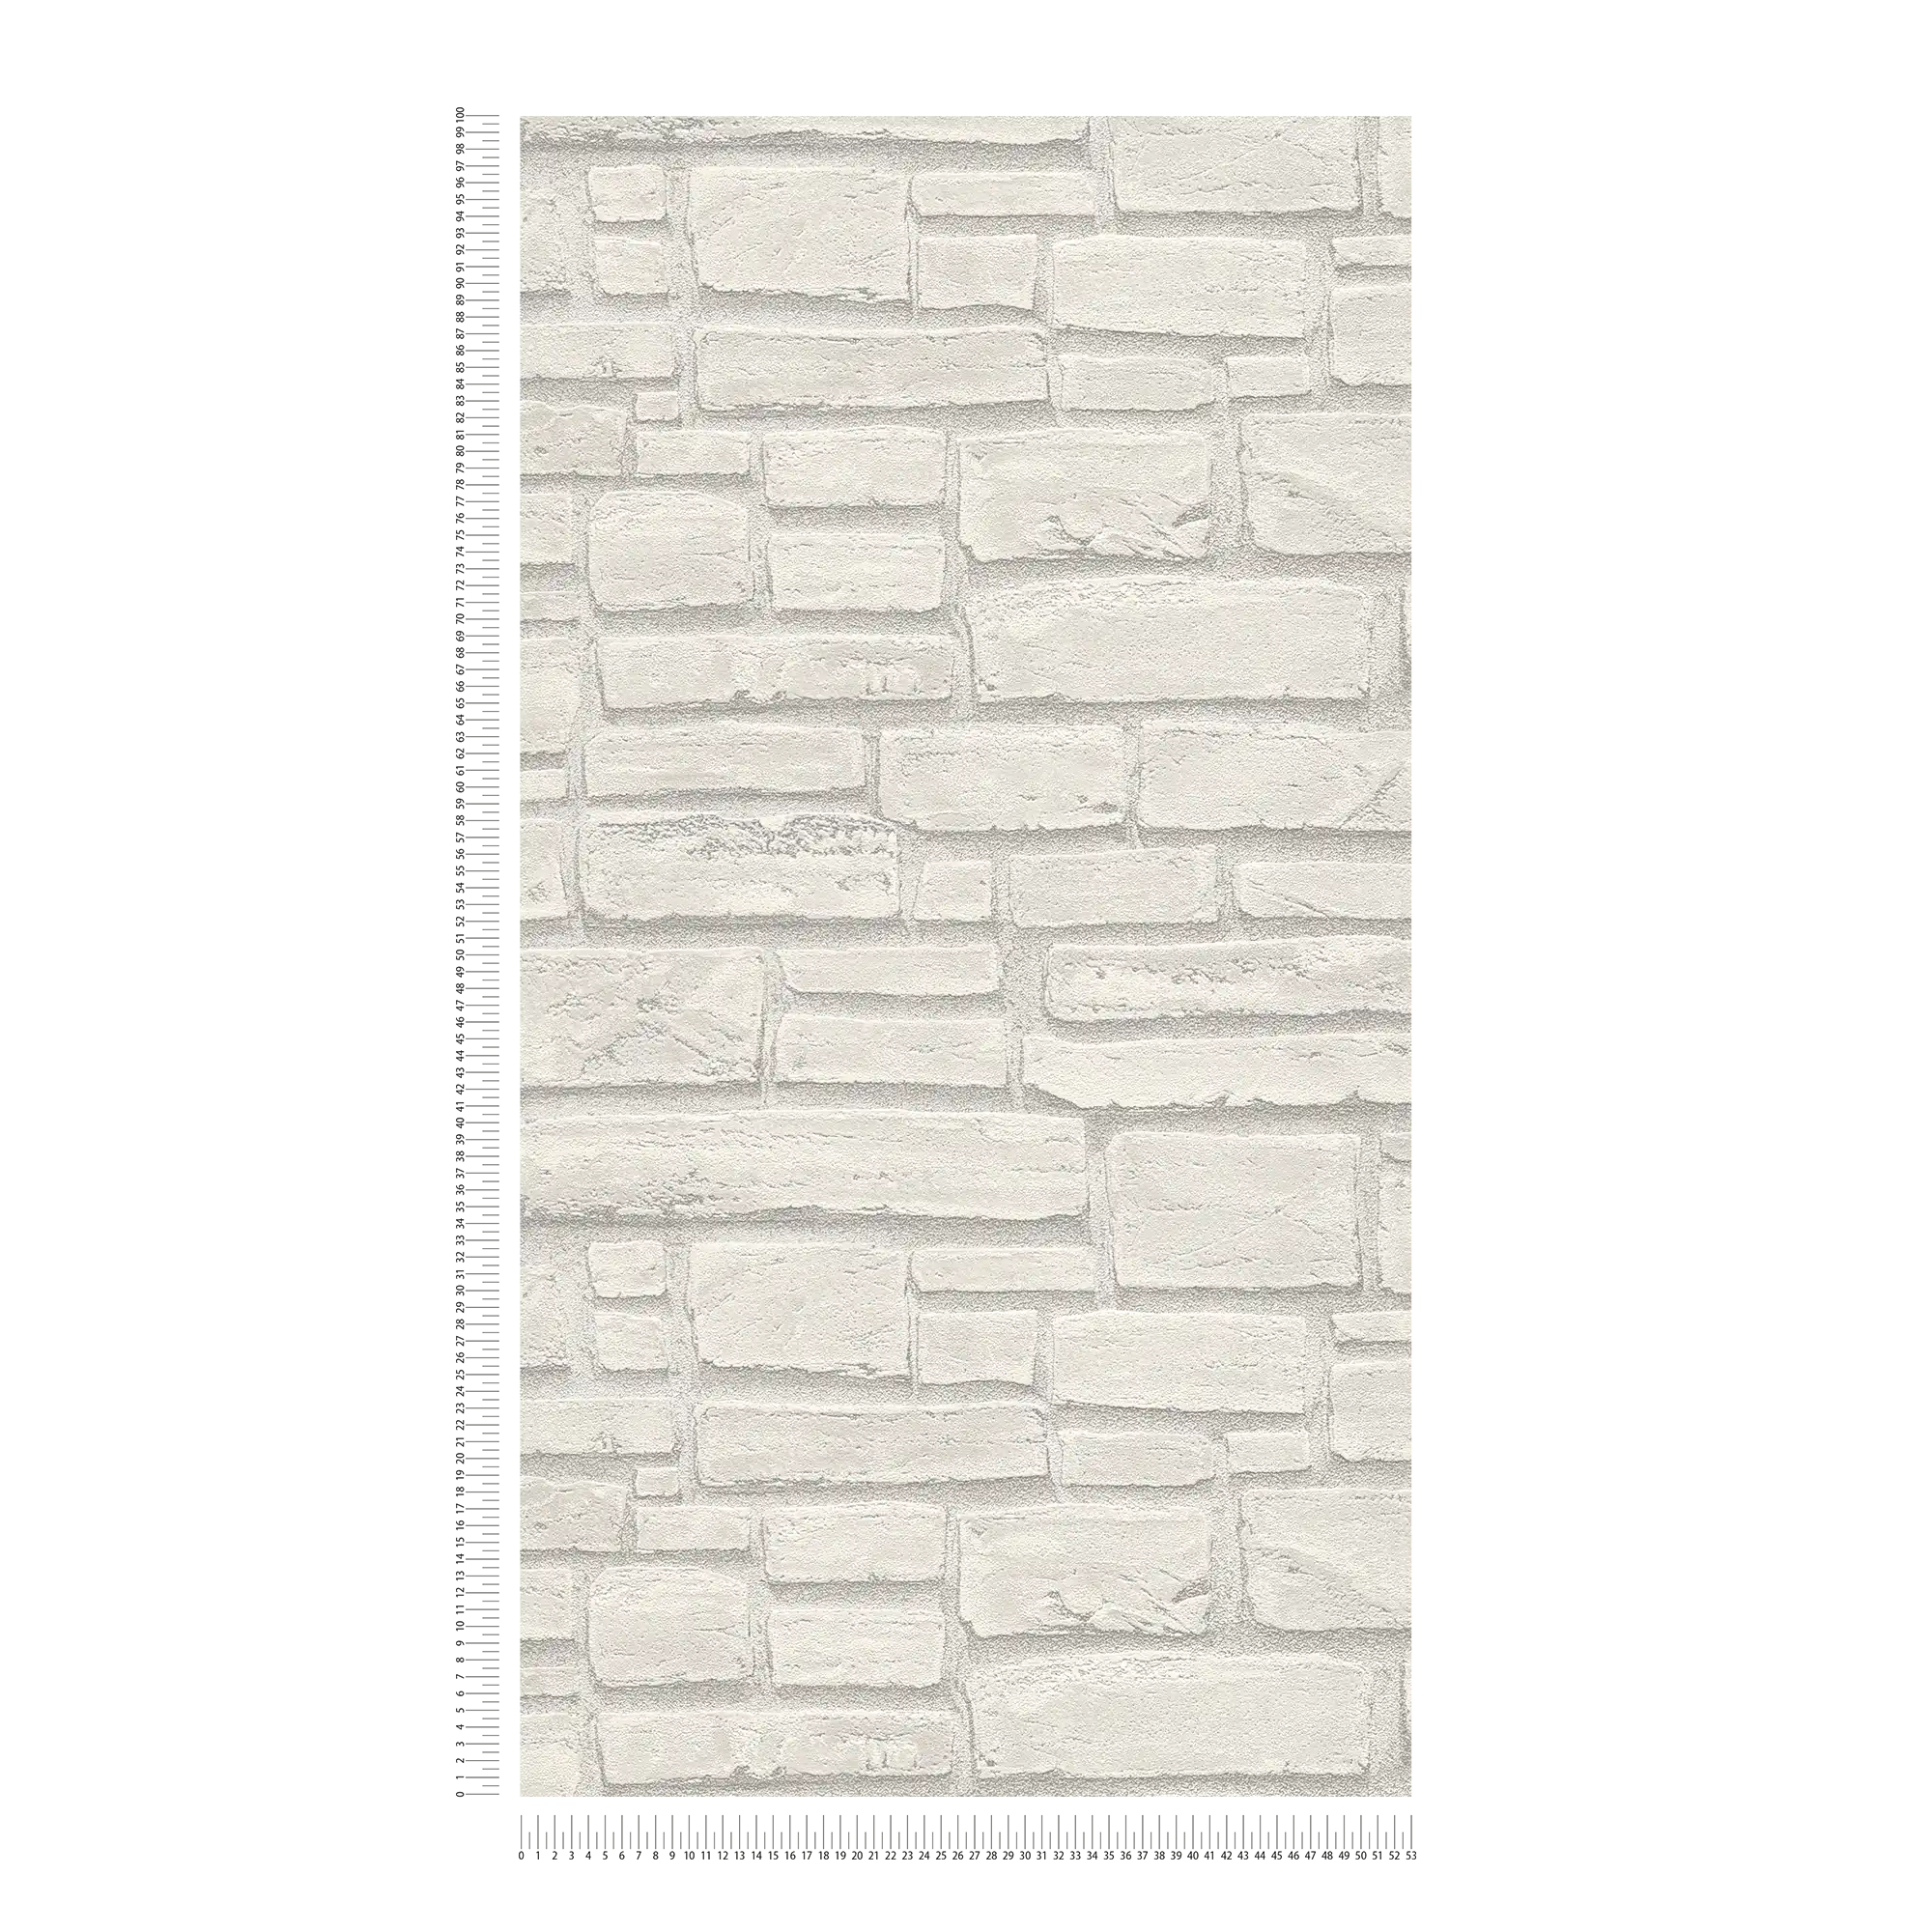             Carta da parati in muratura con pietre grigio chiaro - bianco, grigio
        